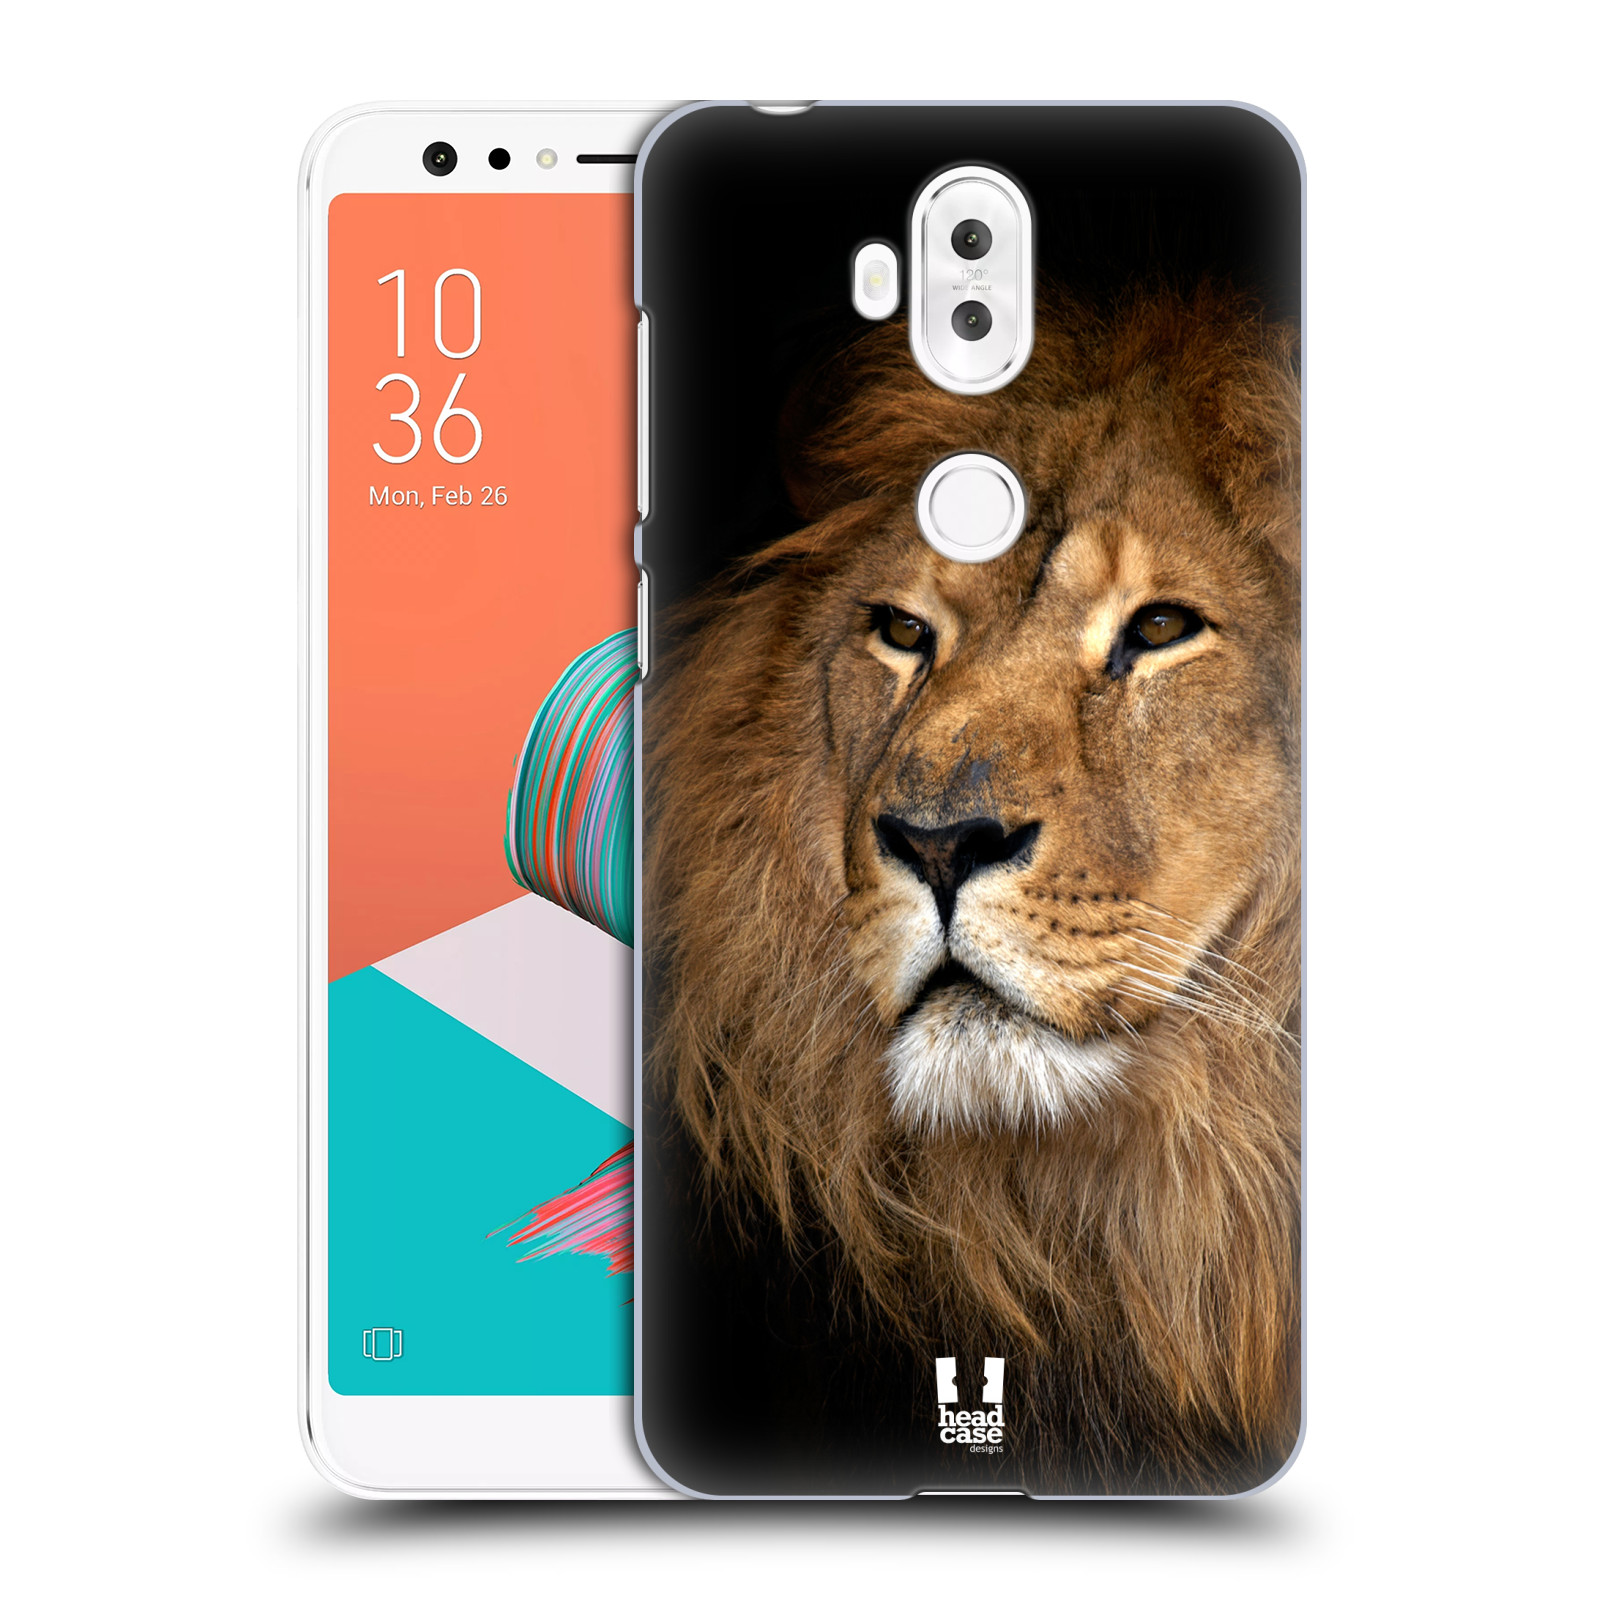 Zadní obal pro mobil Asus Zenfone 5 Lite ZC600KL - HEAD CASE - Svět zvířat král zvířat Lev